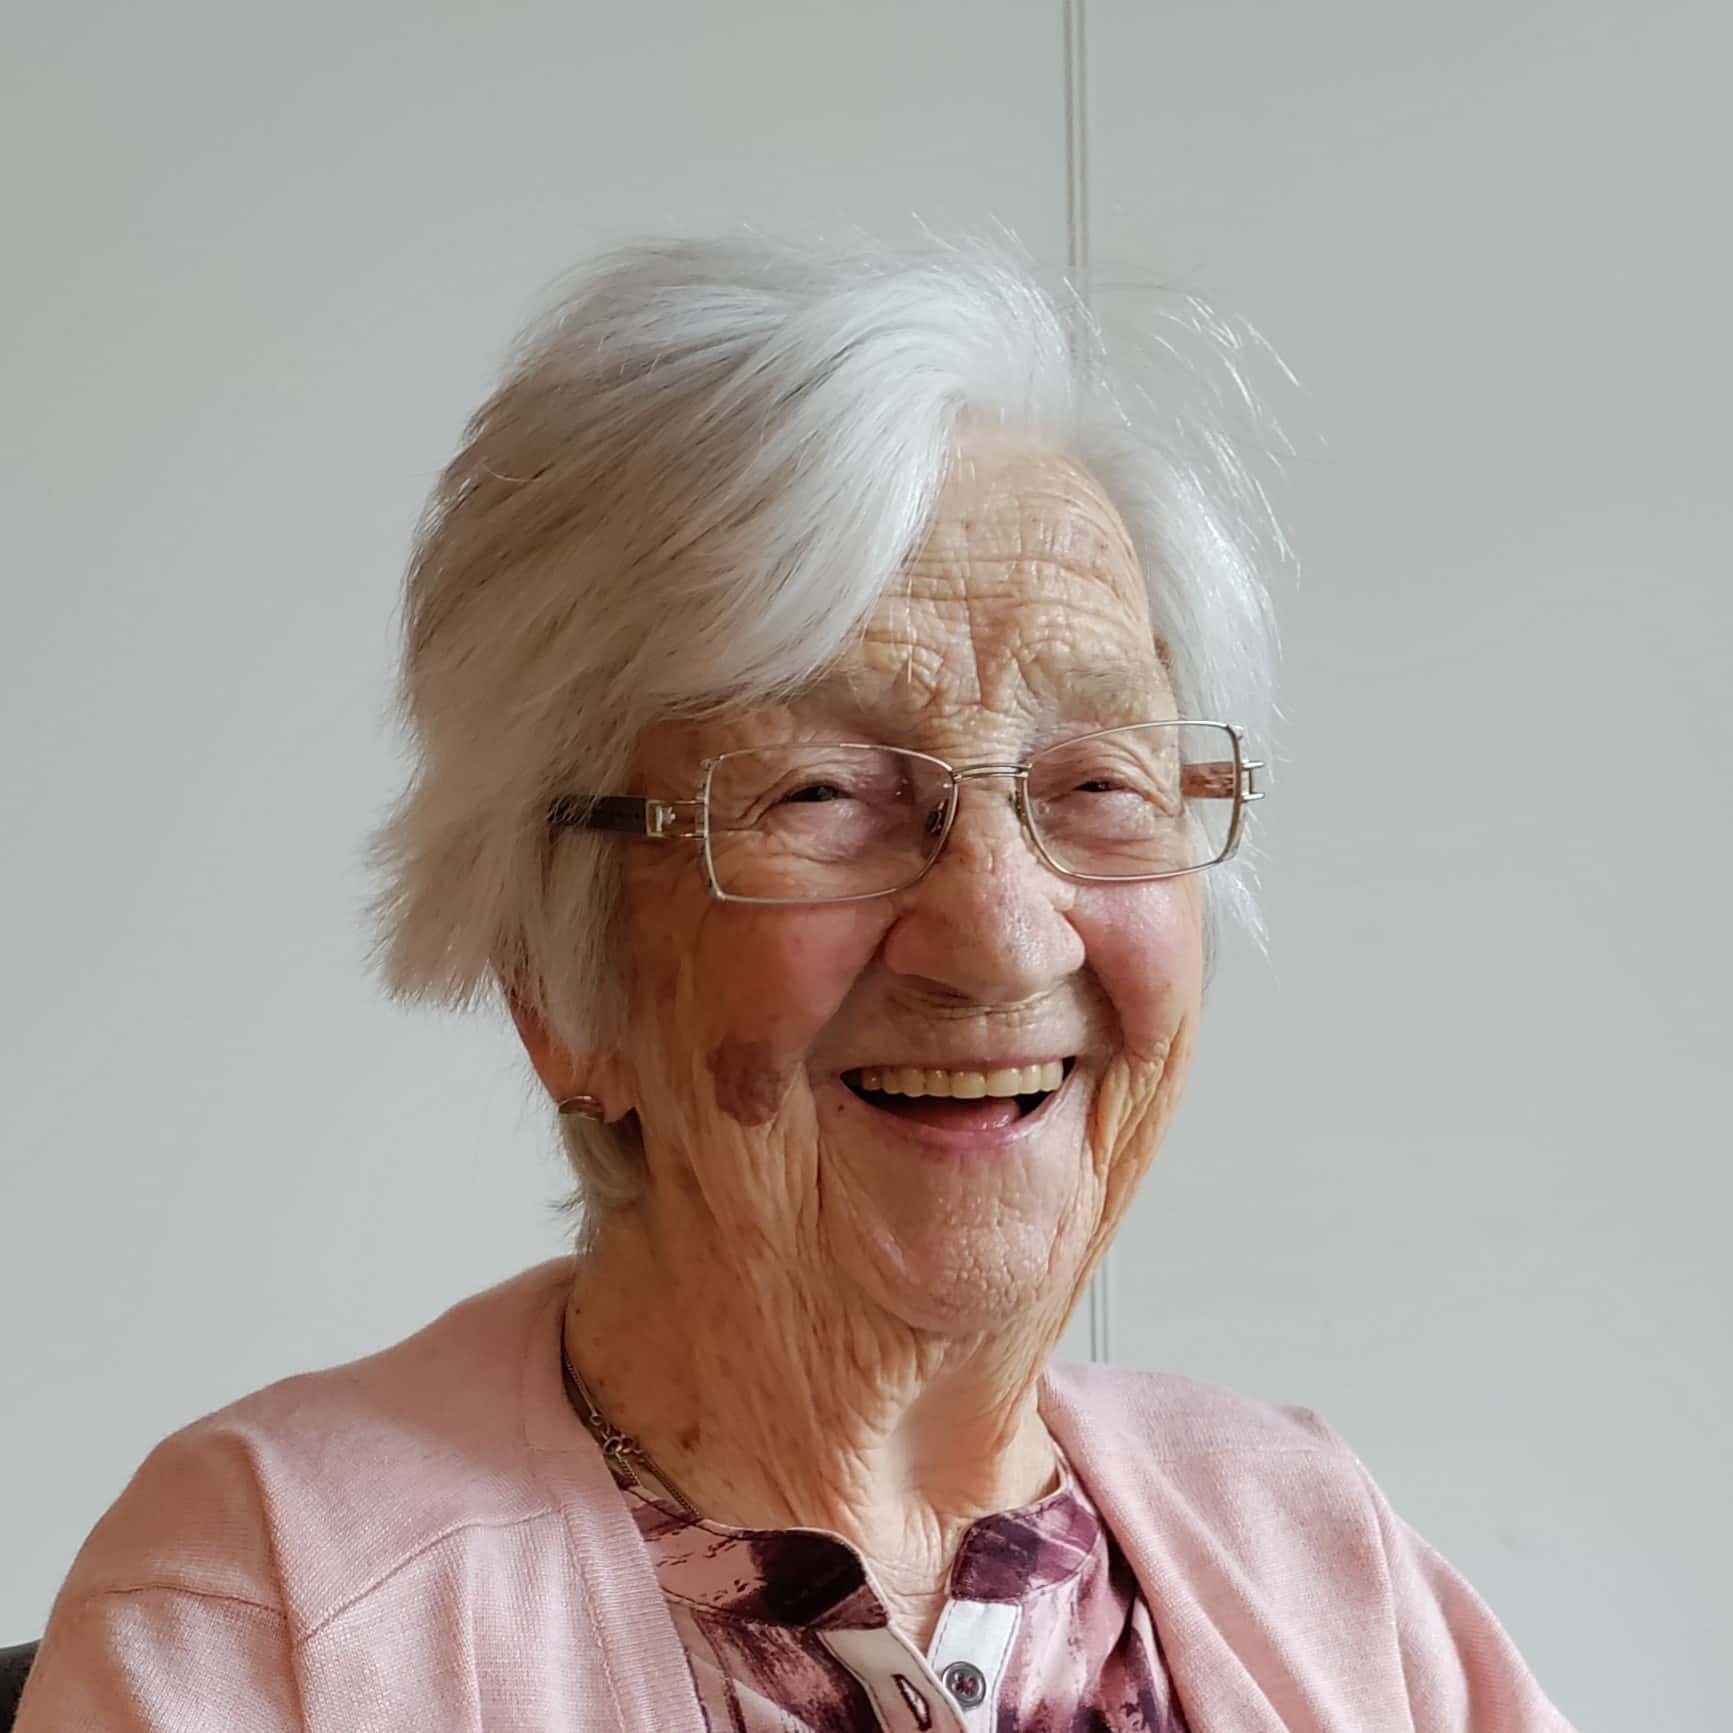 Een oudere vrouw met een bril en een roze trui, liefkozend Plonie genoemd.